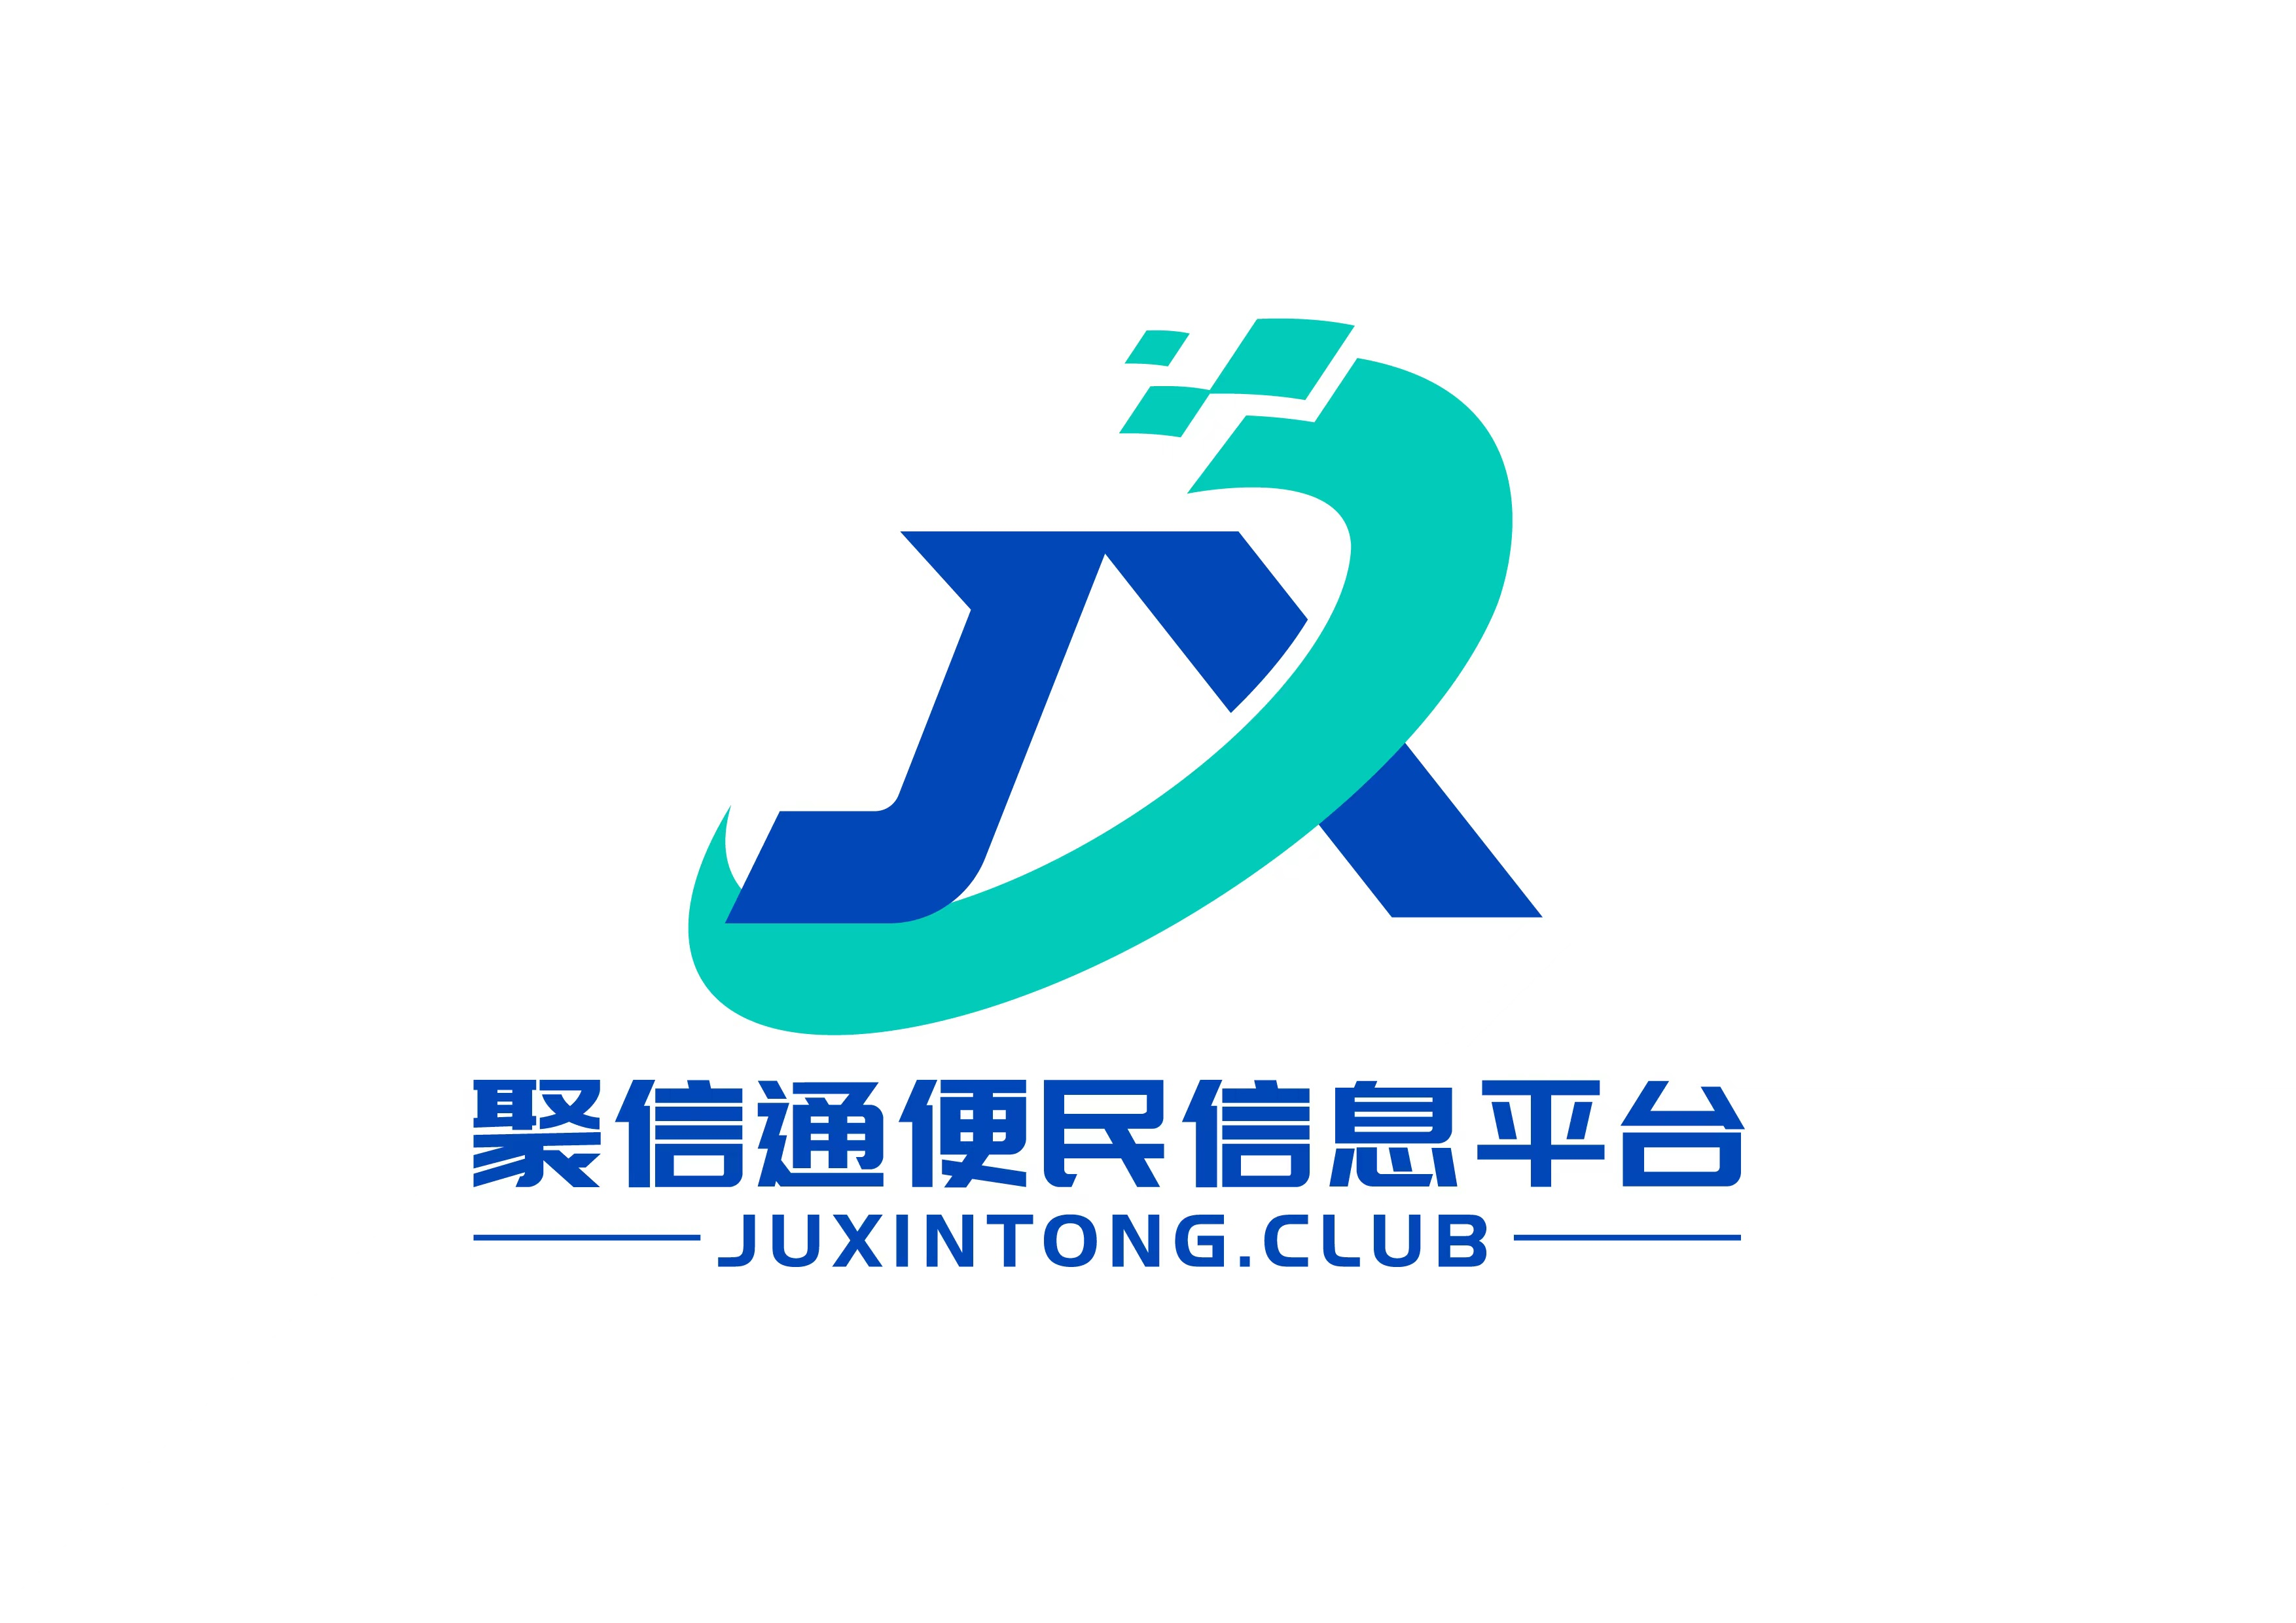 聚信通分类信息系统 - 免费发布房产、招聘、求职、二手、商铺等信息 www.juxintong.club